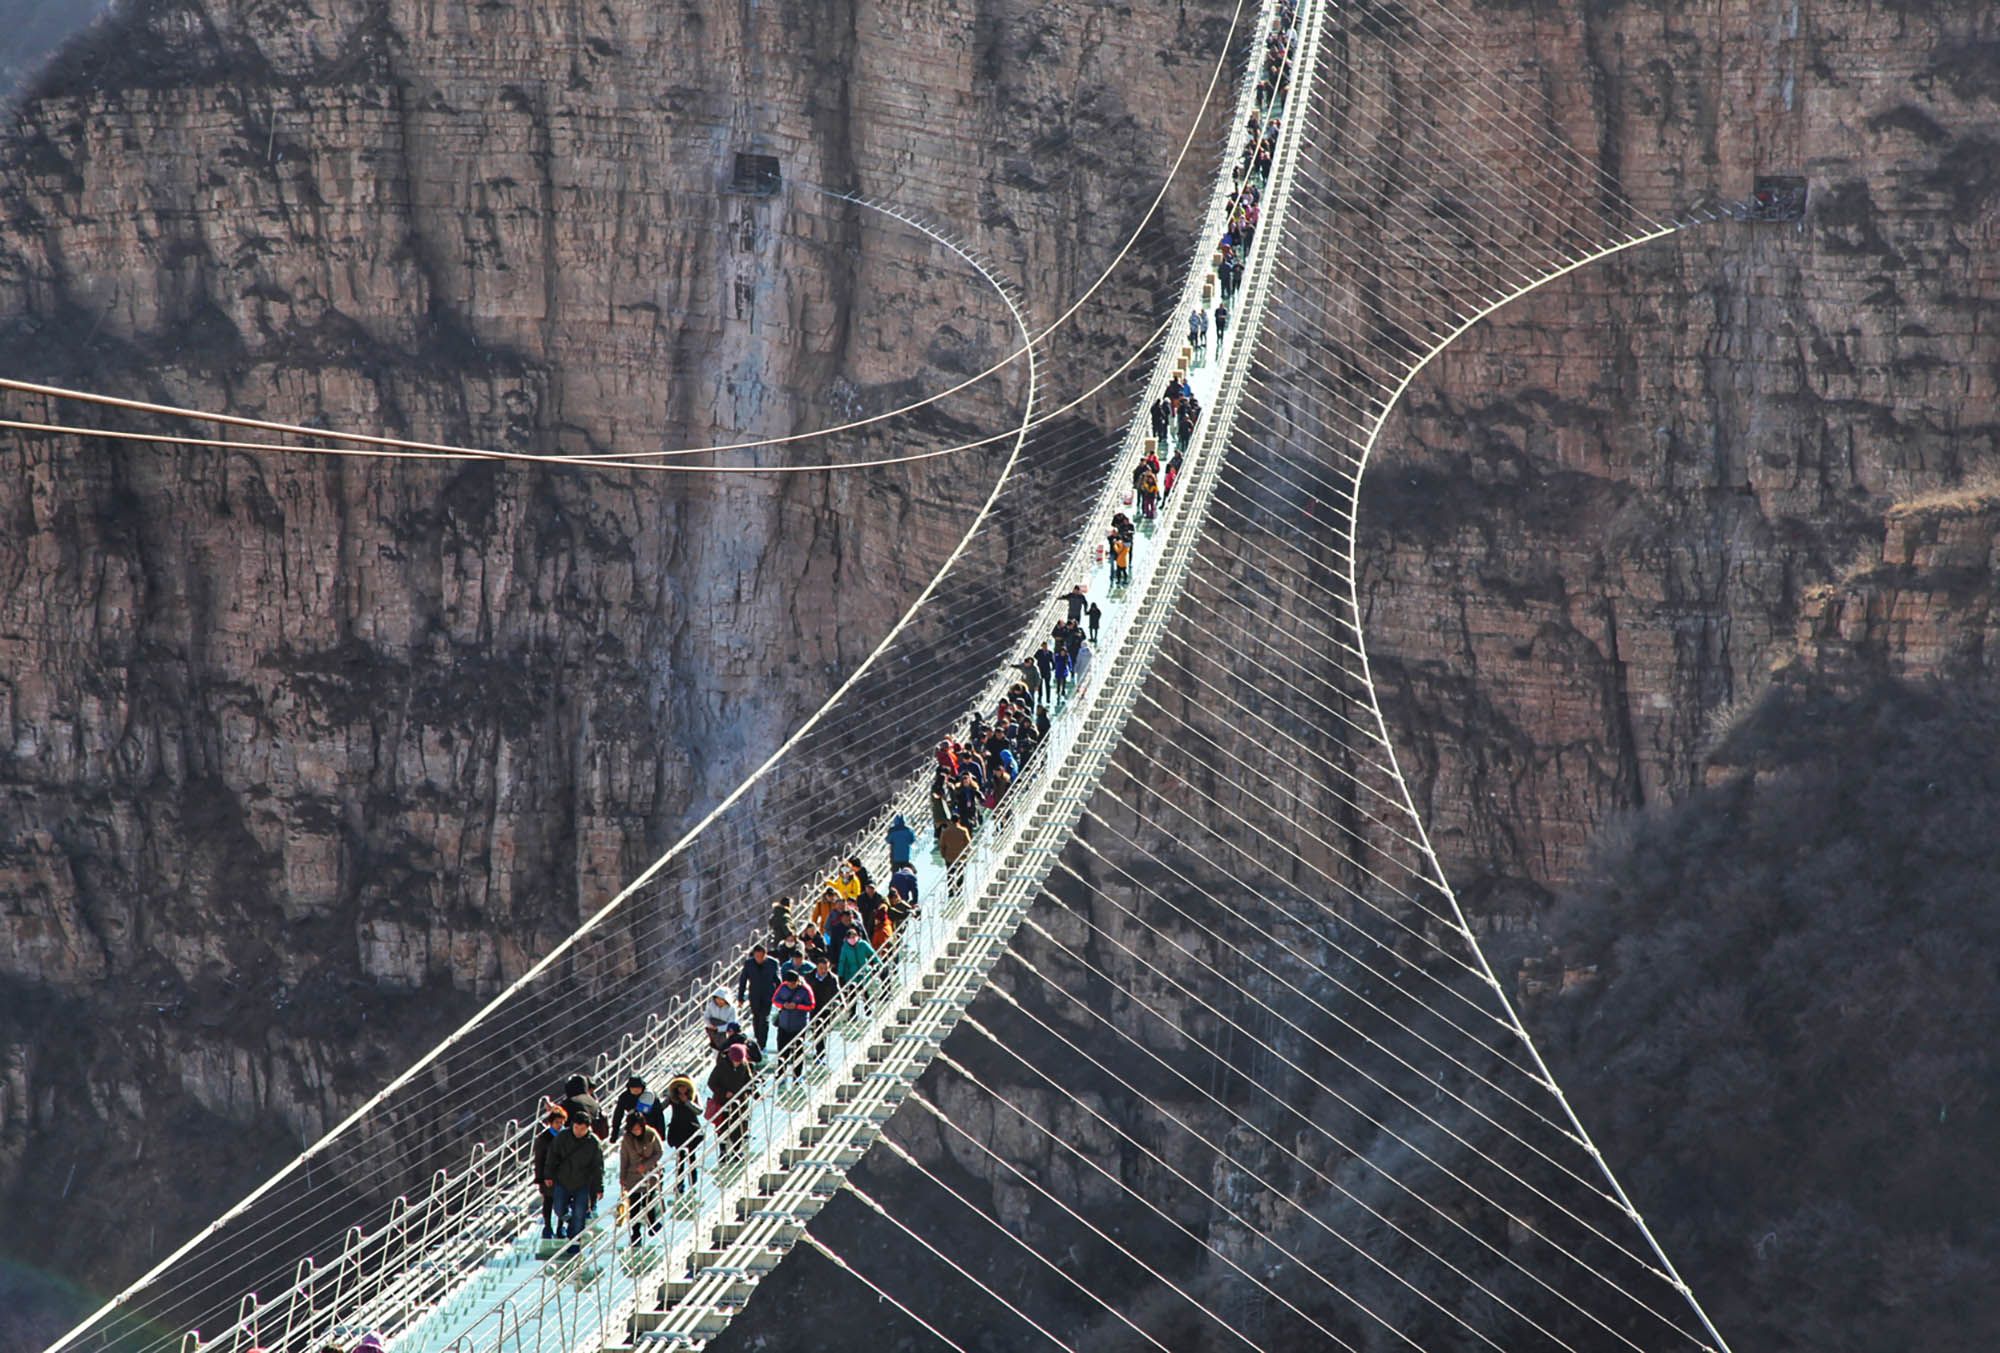 Hongyagu glass bridge, world's longest, opens in Hebei, China | CNN